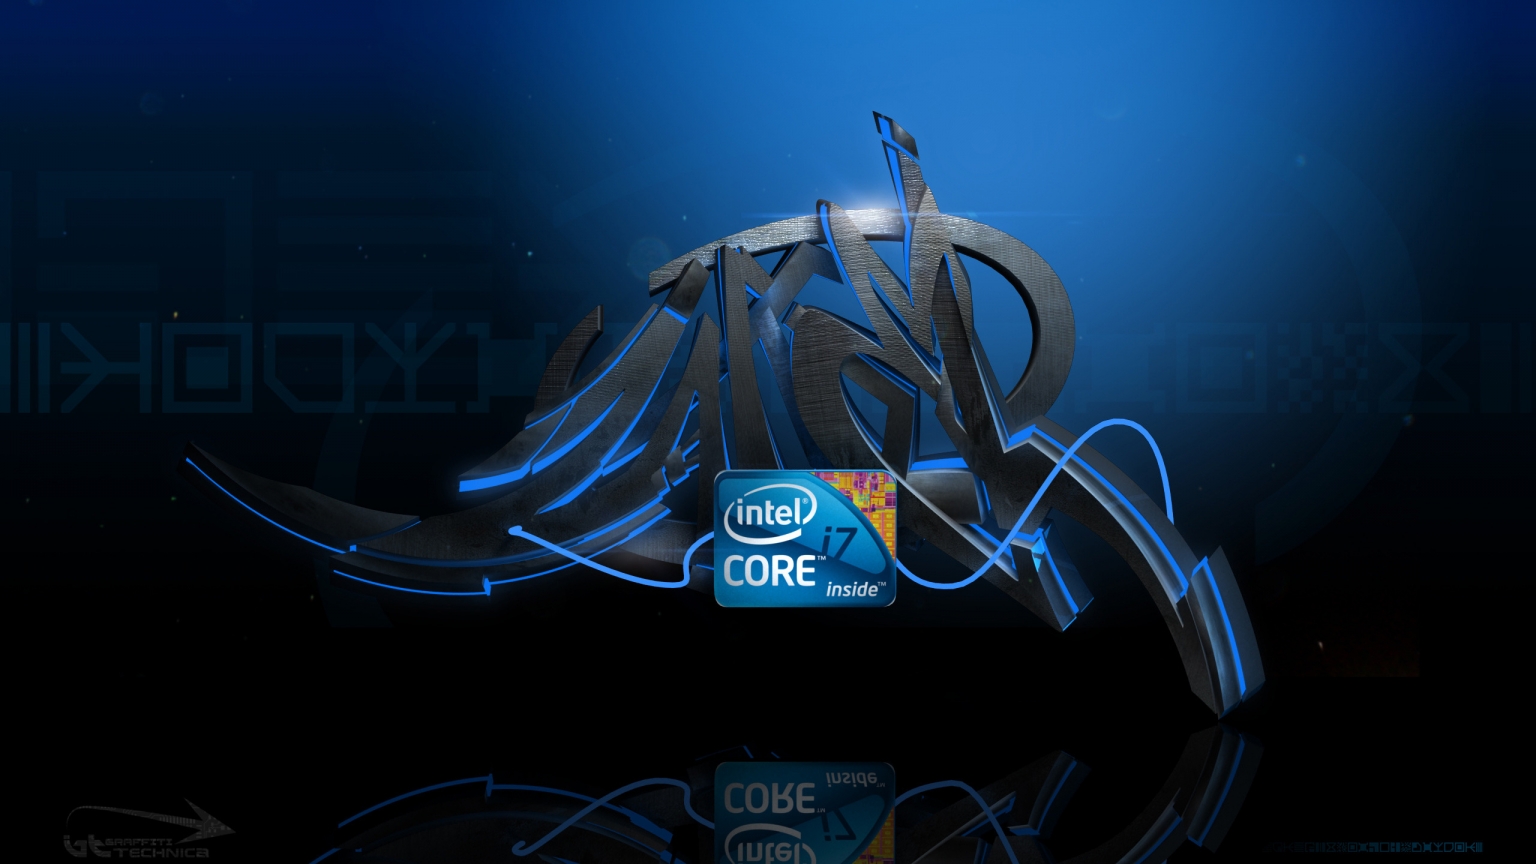 Intel i7 Graffiti for 1536 x 864 HDTV resolution